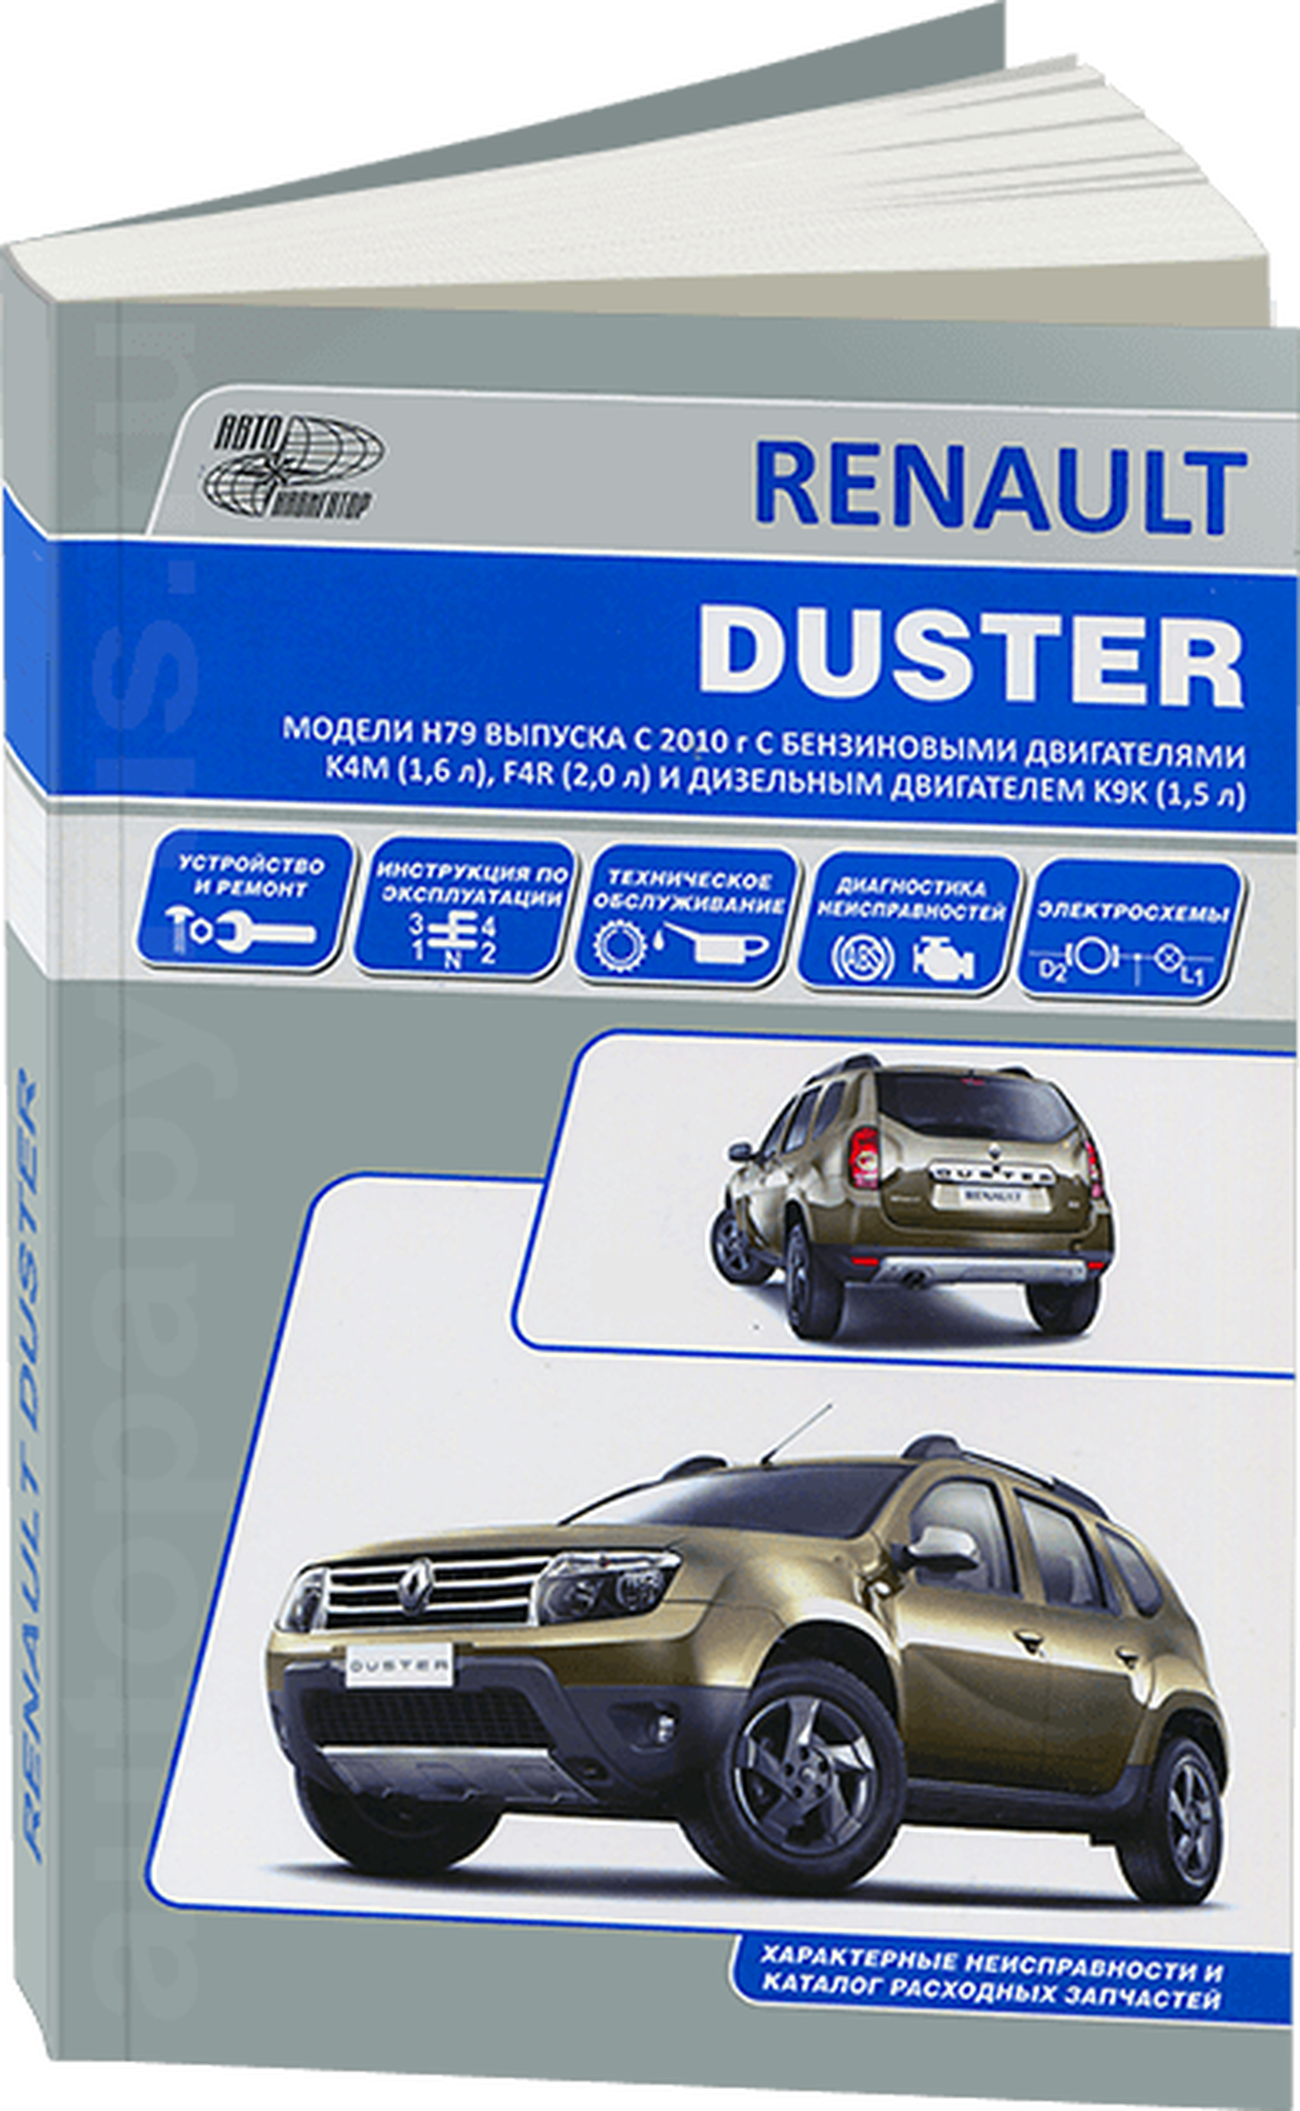 Книга: RENAULT DUSTER (б , д) с 2010 г.в., рем., экспл., то | Автонавигатор